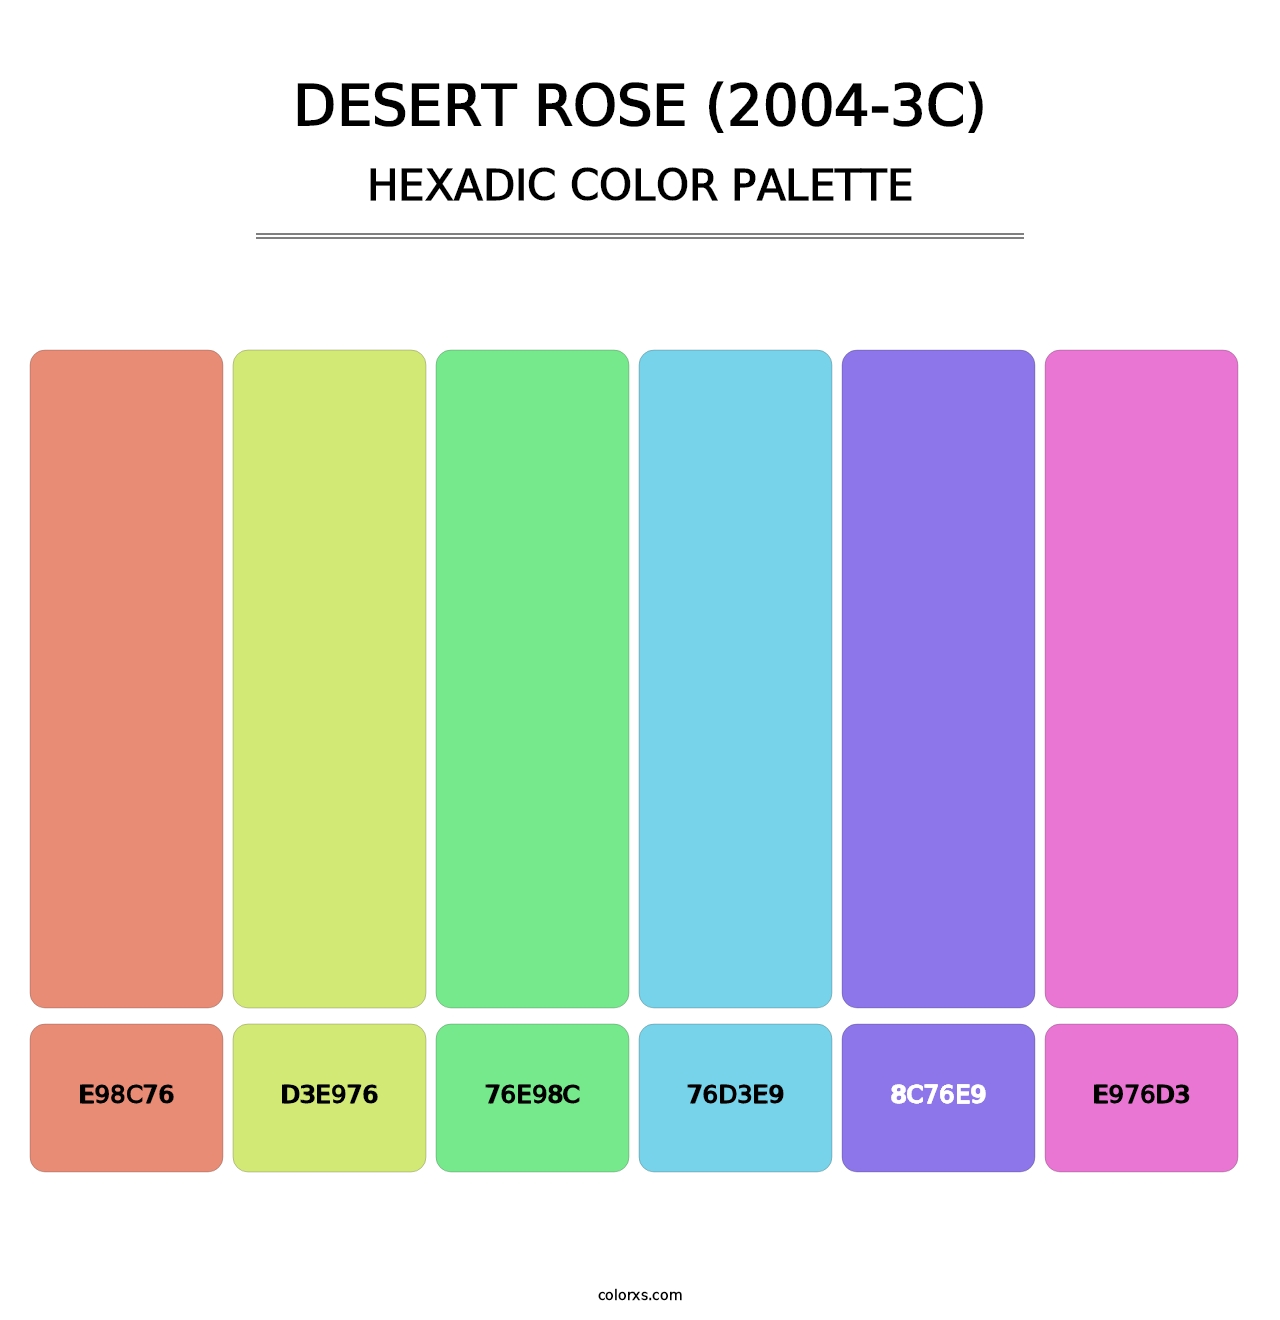 Desert Rose (2004-3C) - Hexadic Color Palette